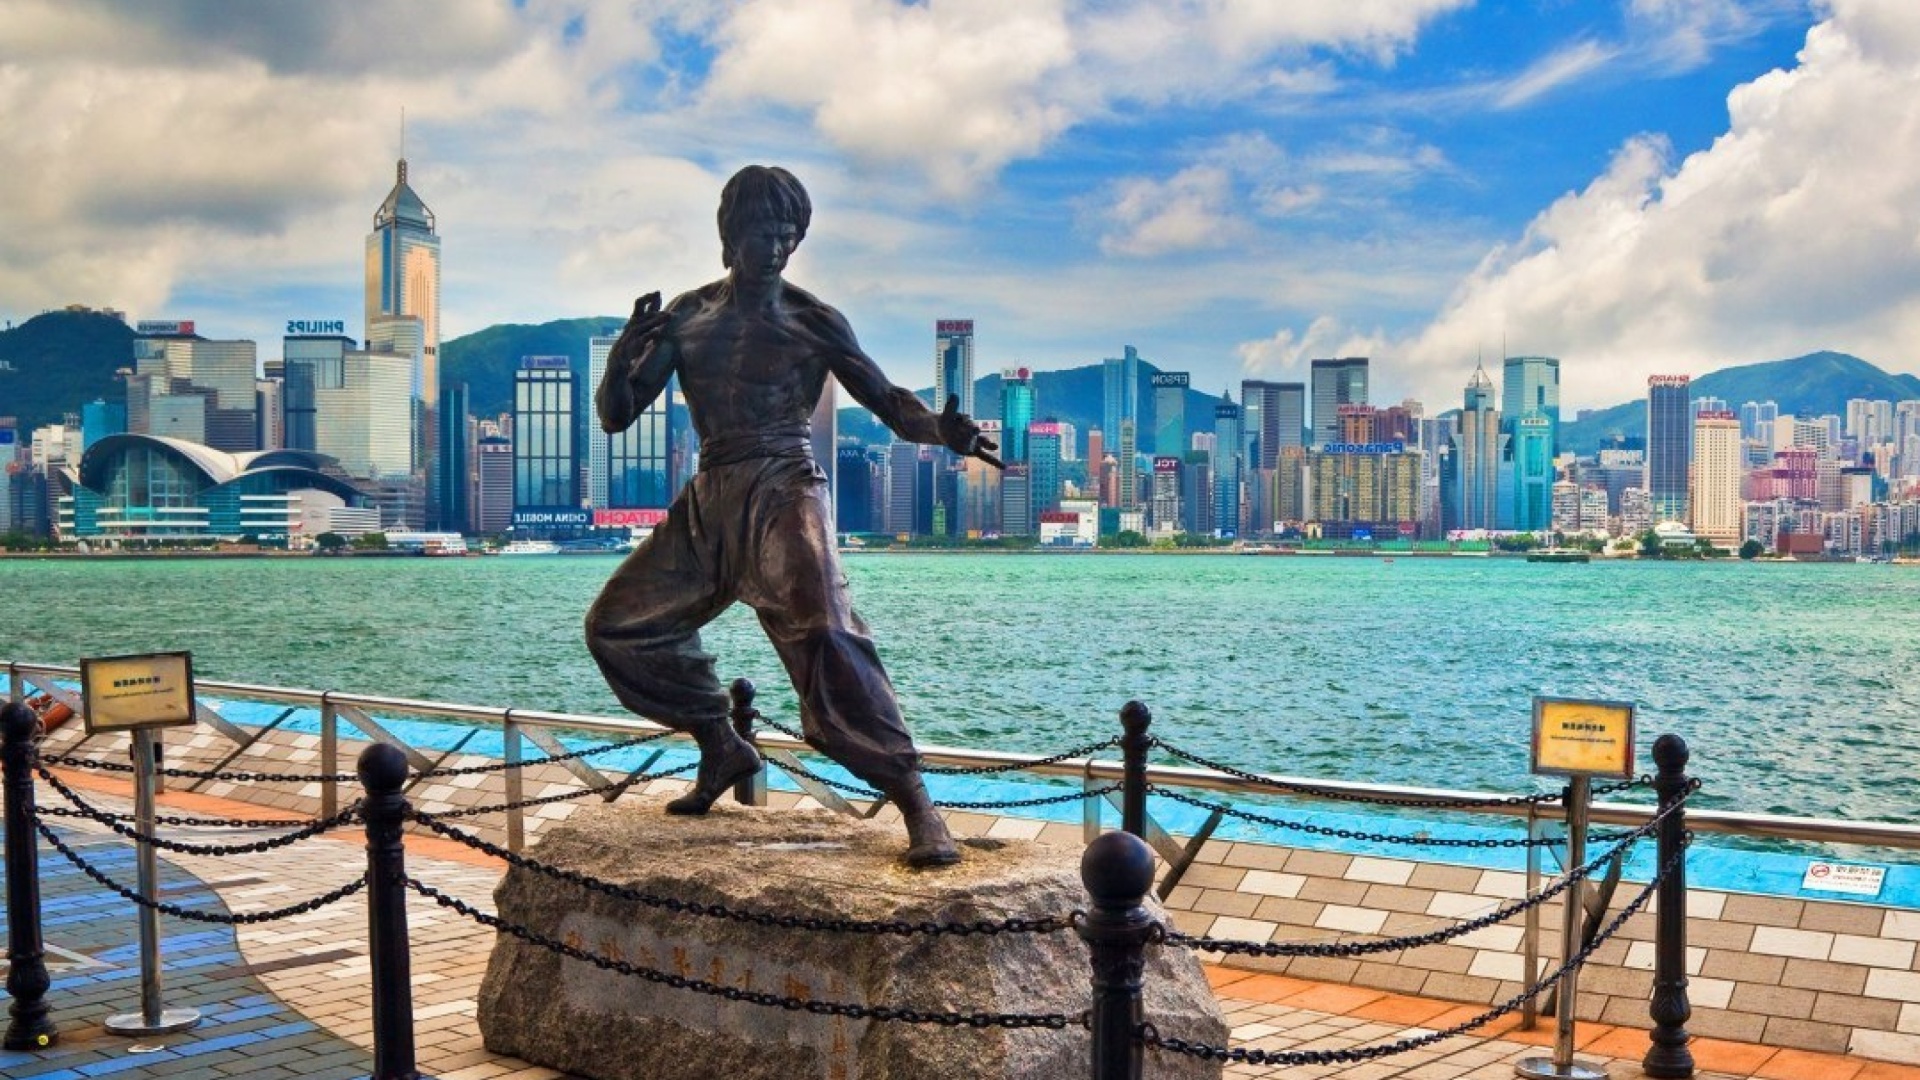 Bruce Lee statue in Hong Kong wallpaper 1920x1080